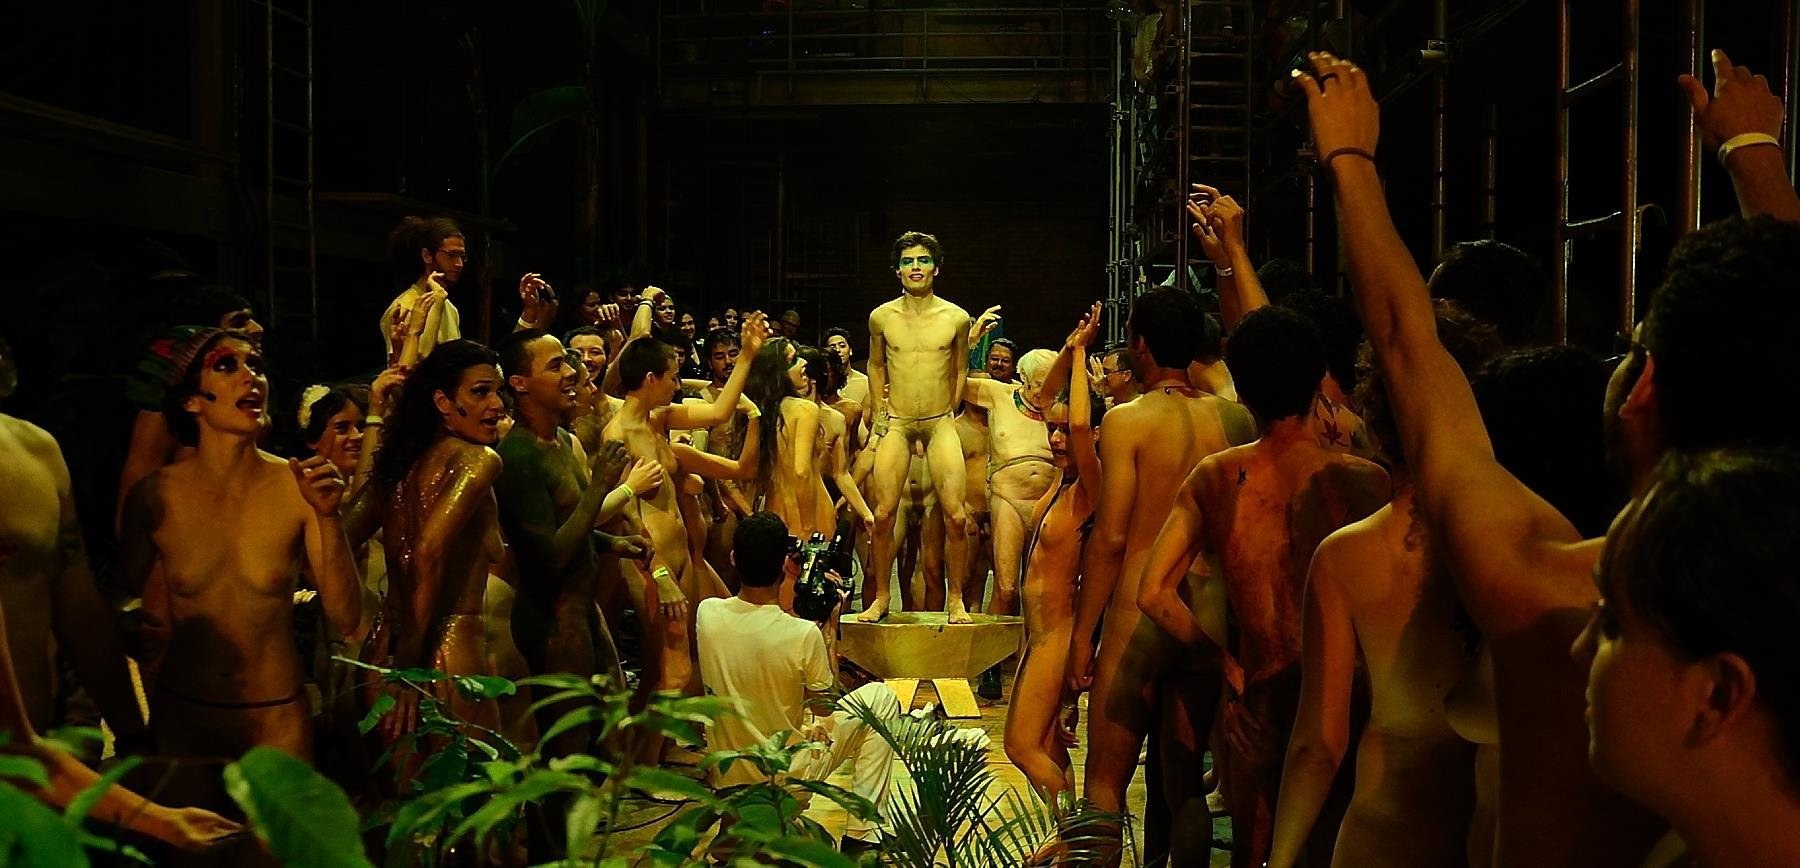 голые актеры играют в театре фото 79